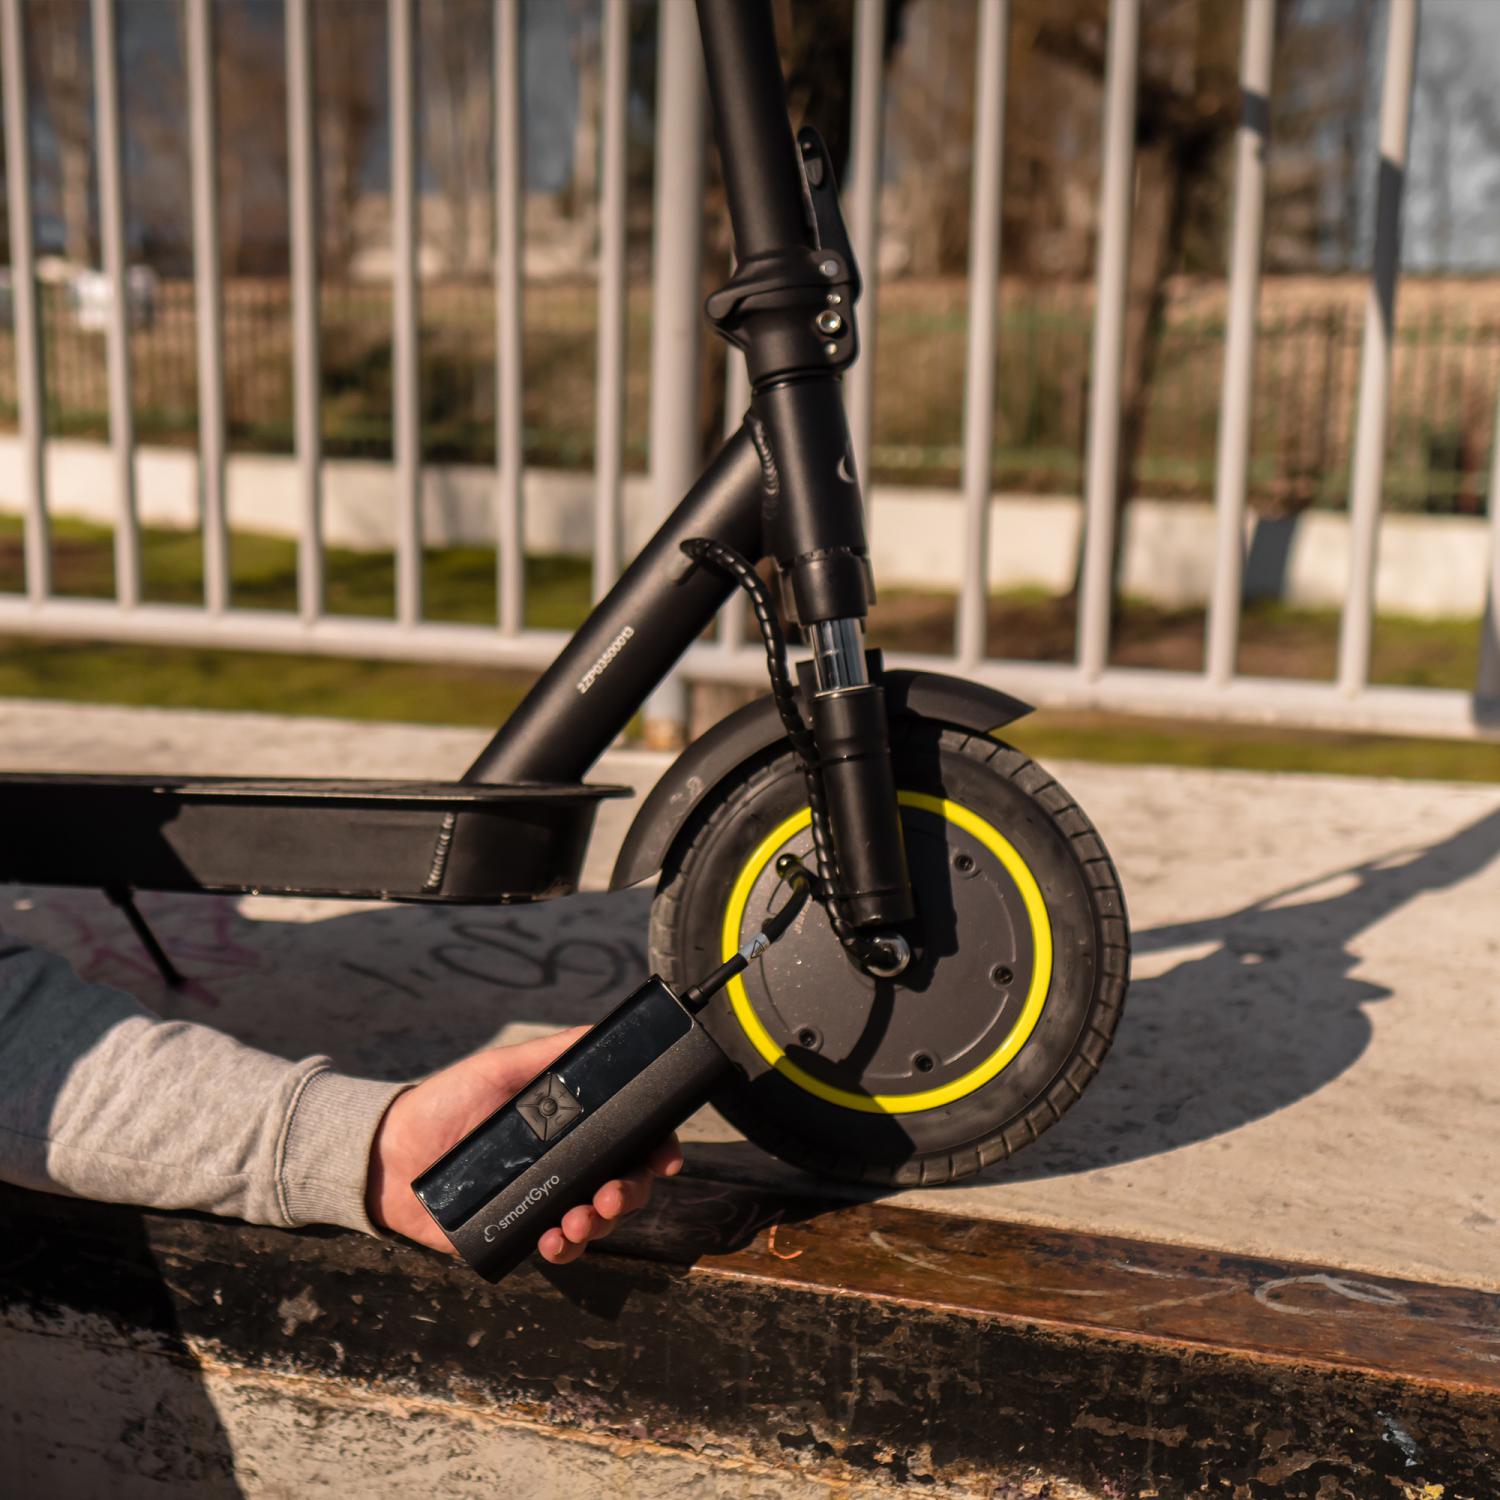 Bolsa delantera para patinetes eléctricos Smartgyro Carbono